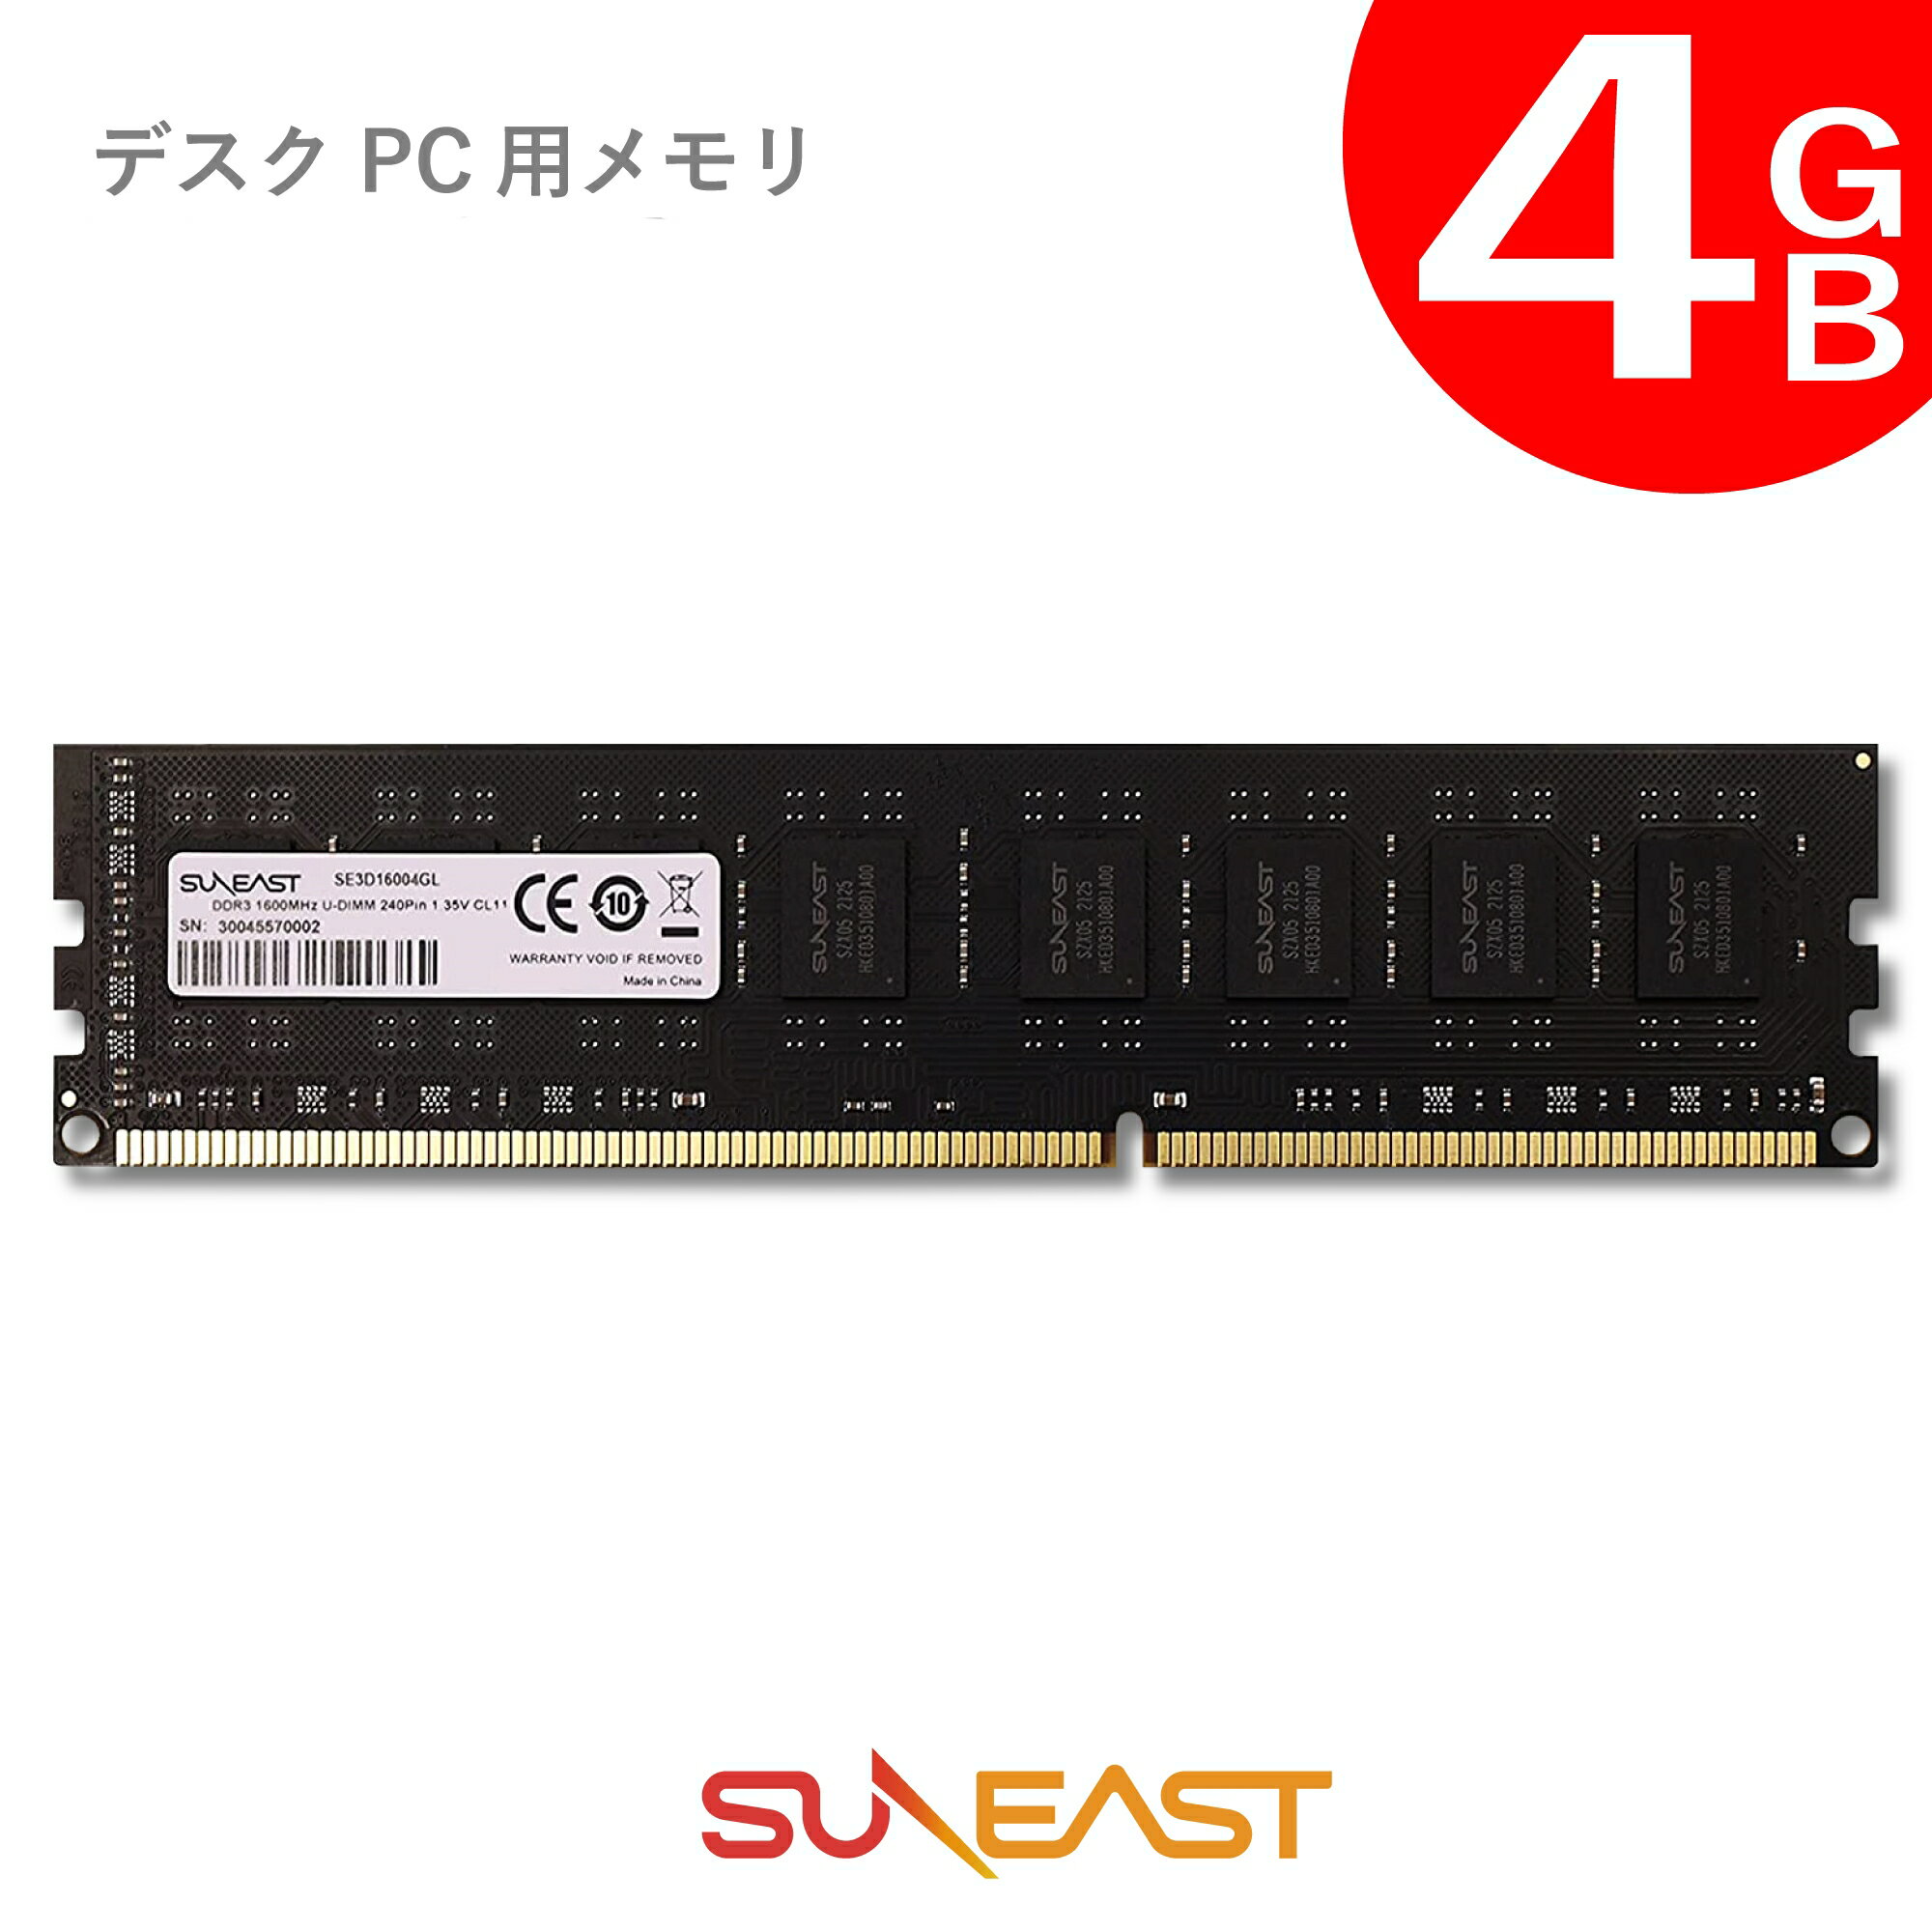 SUNEAST デスクトップPC用 メモリモ<strong>ジュール</strong> 4GB DDR3 内蔵メモリー 増設メモリー デスクトップPC用メモリ 1600MHz パソコンメモリ 240pin U-DIMM 1.35V対応 国内正規品 無期限保証 SE3D16004GL